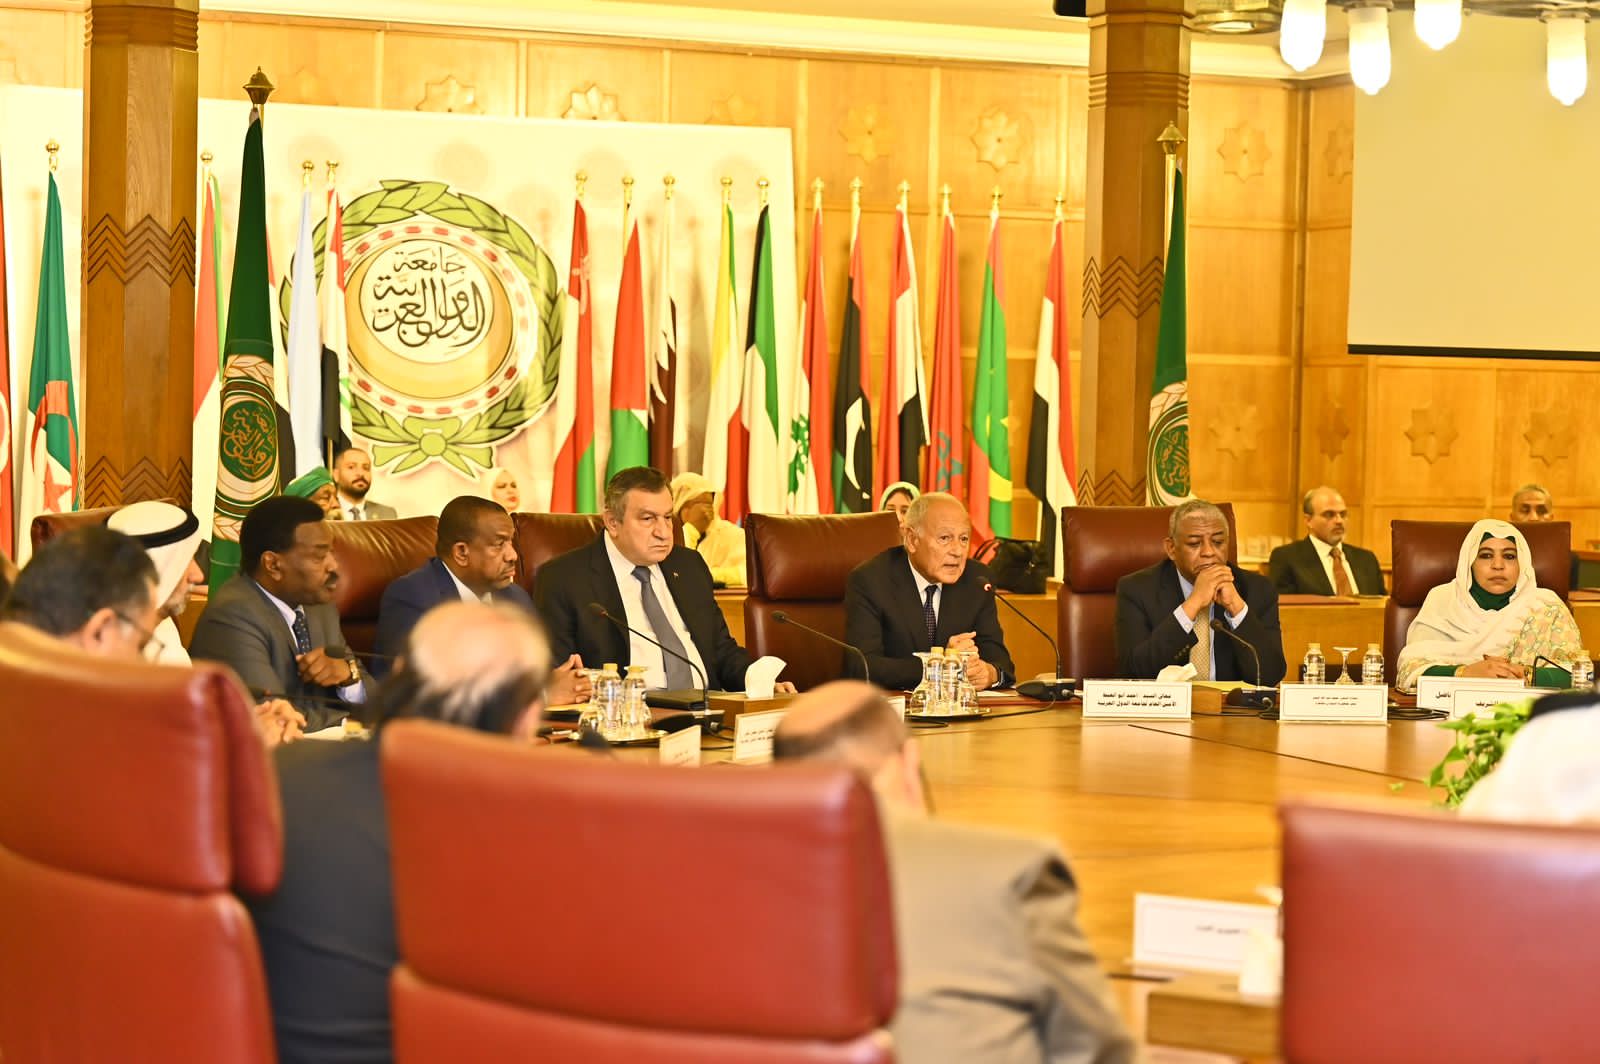 سفير السودان : نشكر مصر لفتح أبوابها وقلبها لاستضافة السودانيين بكرم وترحاب 